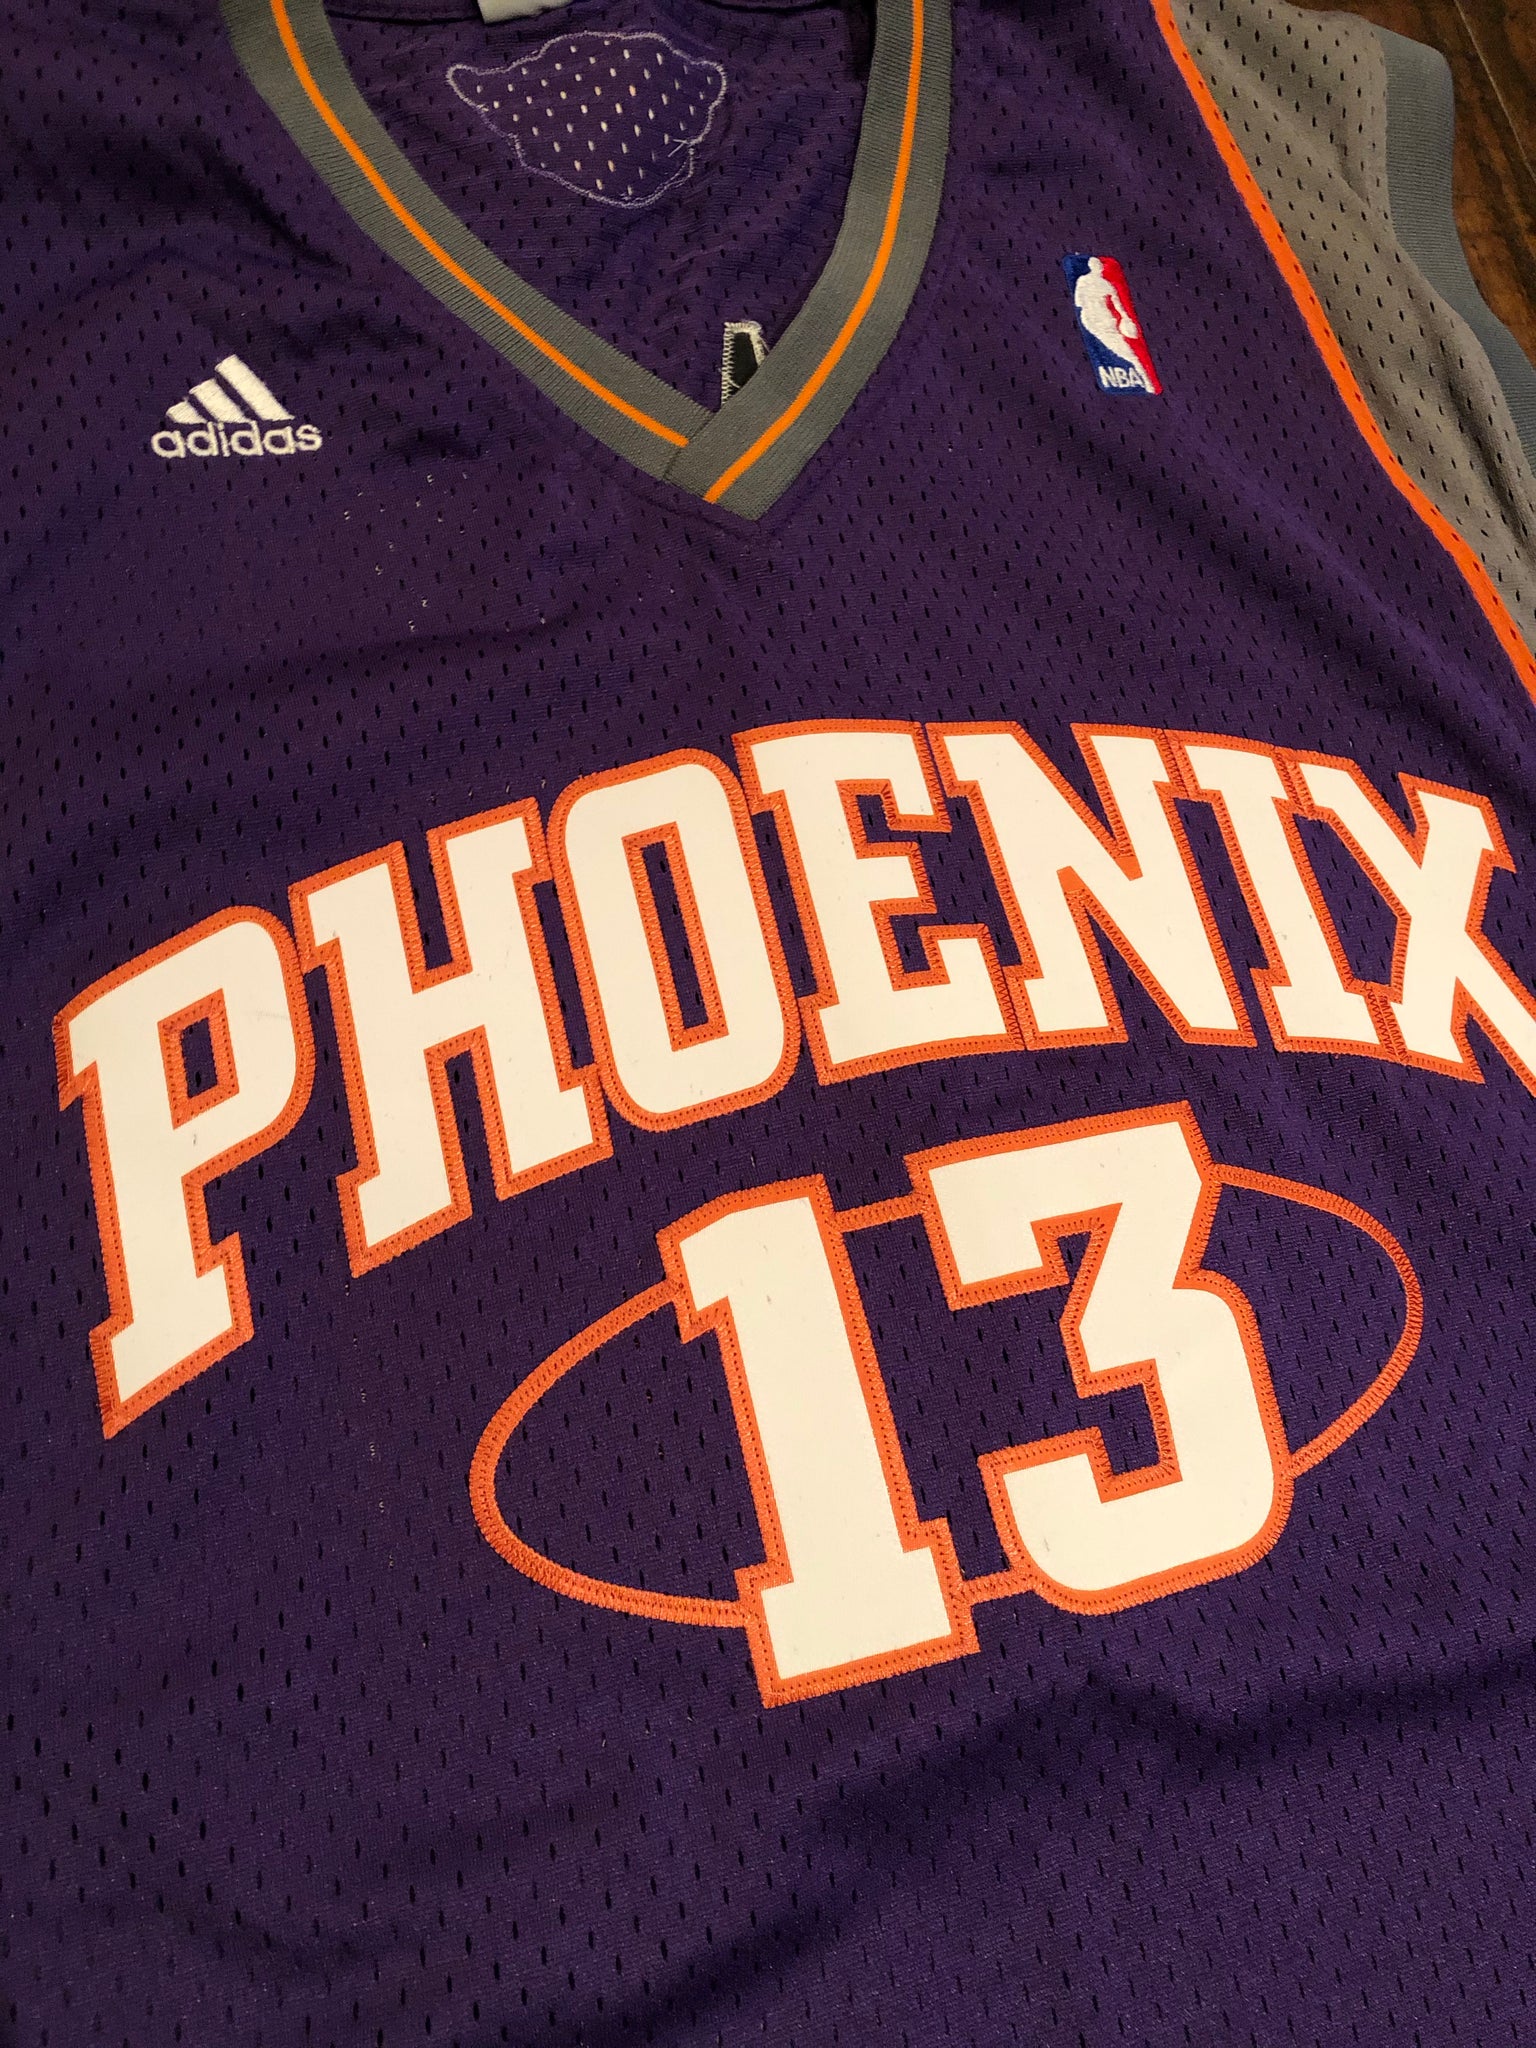 Phoenix Suns Steve Nash Jerseys, Swingman Jersey, Suns City Edition Jerseys